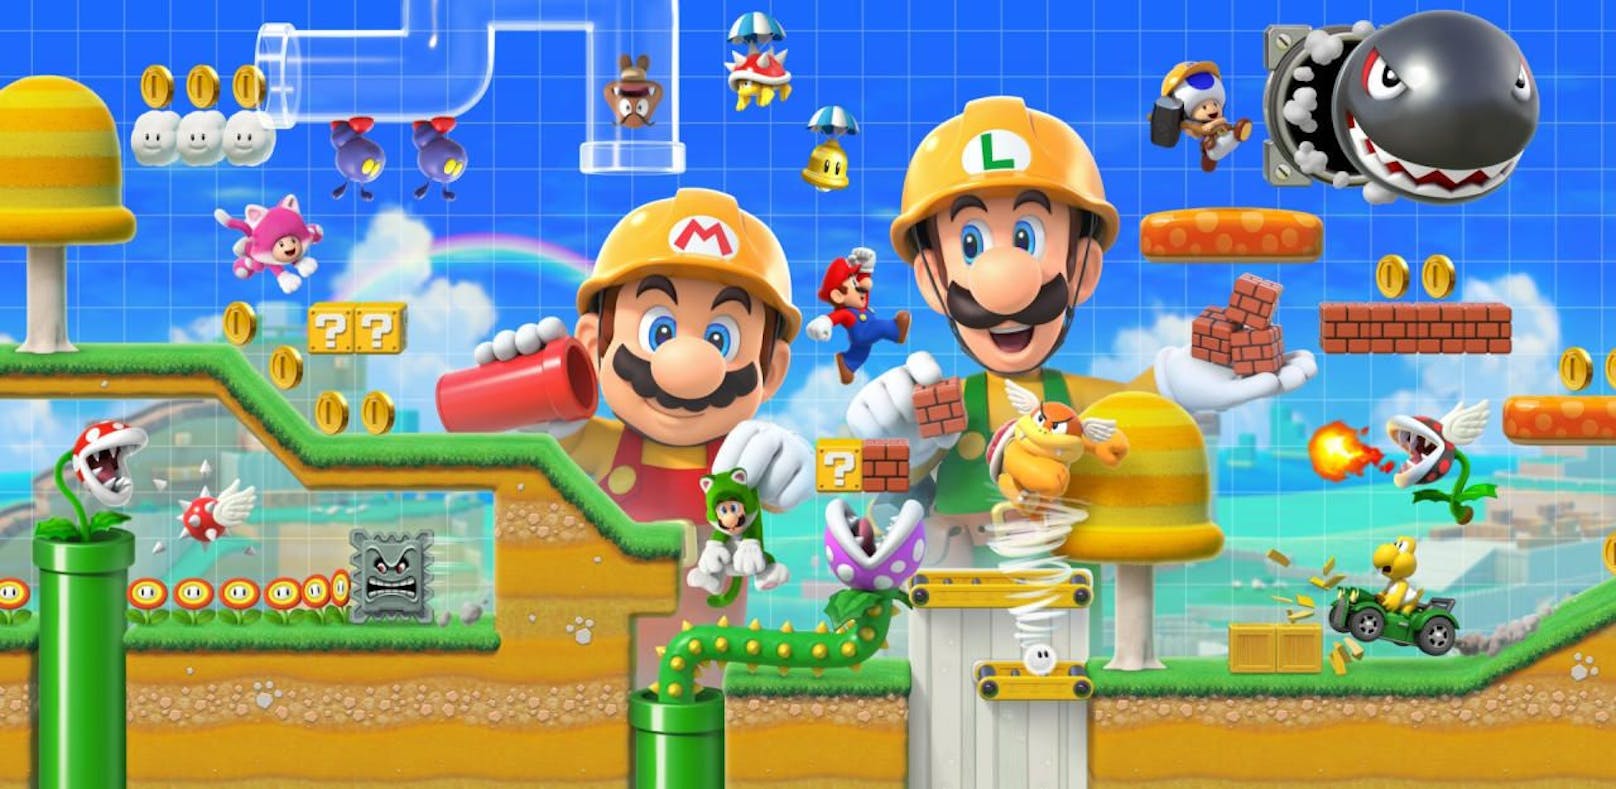 Super Mario Maker 2 für Nintendo Switch zu gewinnen